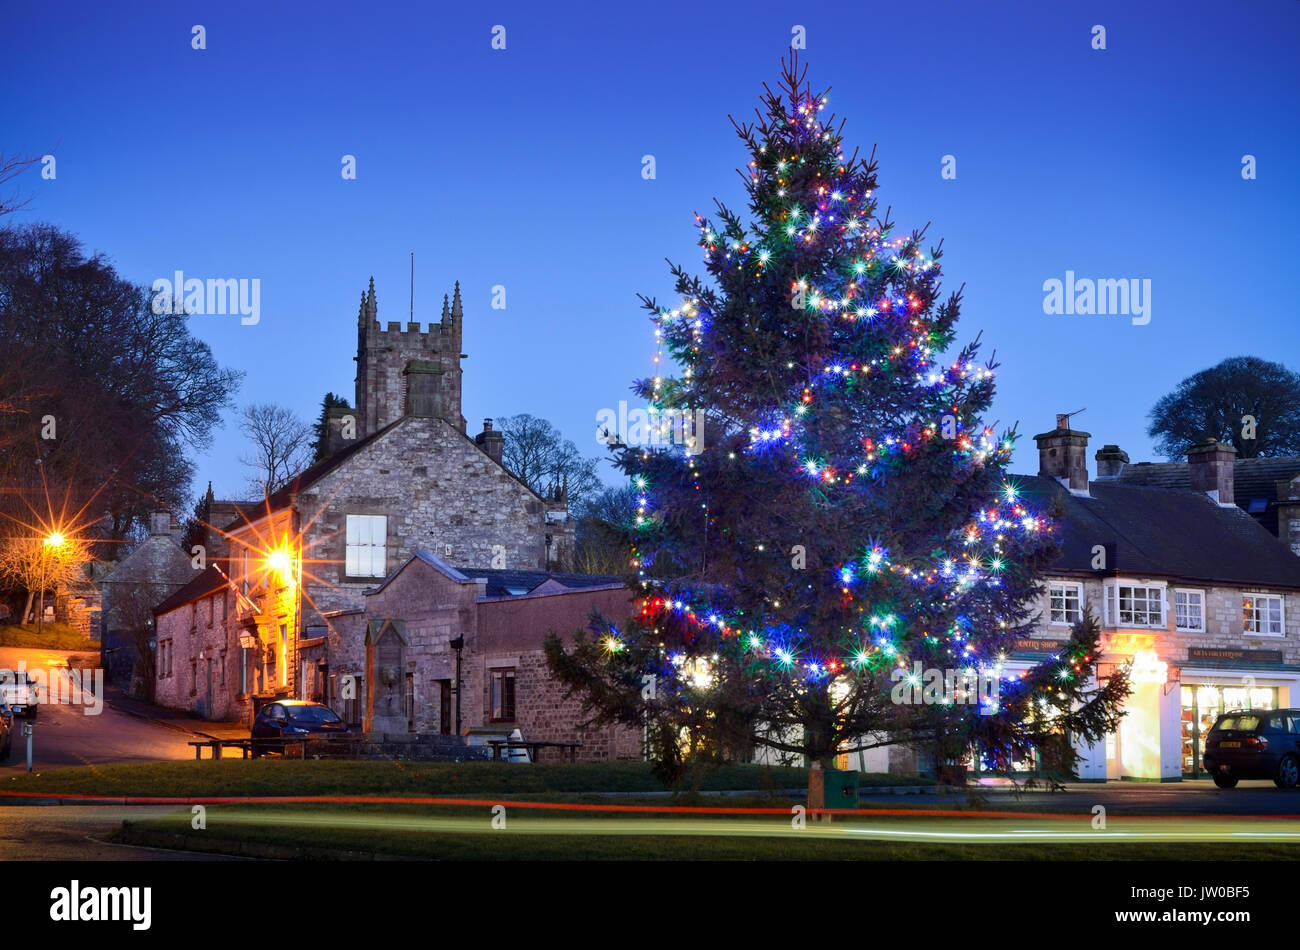 Ein Weihnachtsbaum und festliche Lichter im Zentrum von Hartington, einem malerischen Dorf im Peak District, Derbyshire, England UK verschönern - Dezember Stockfoto